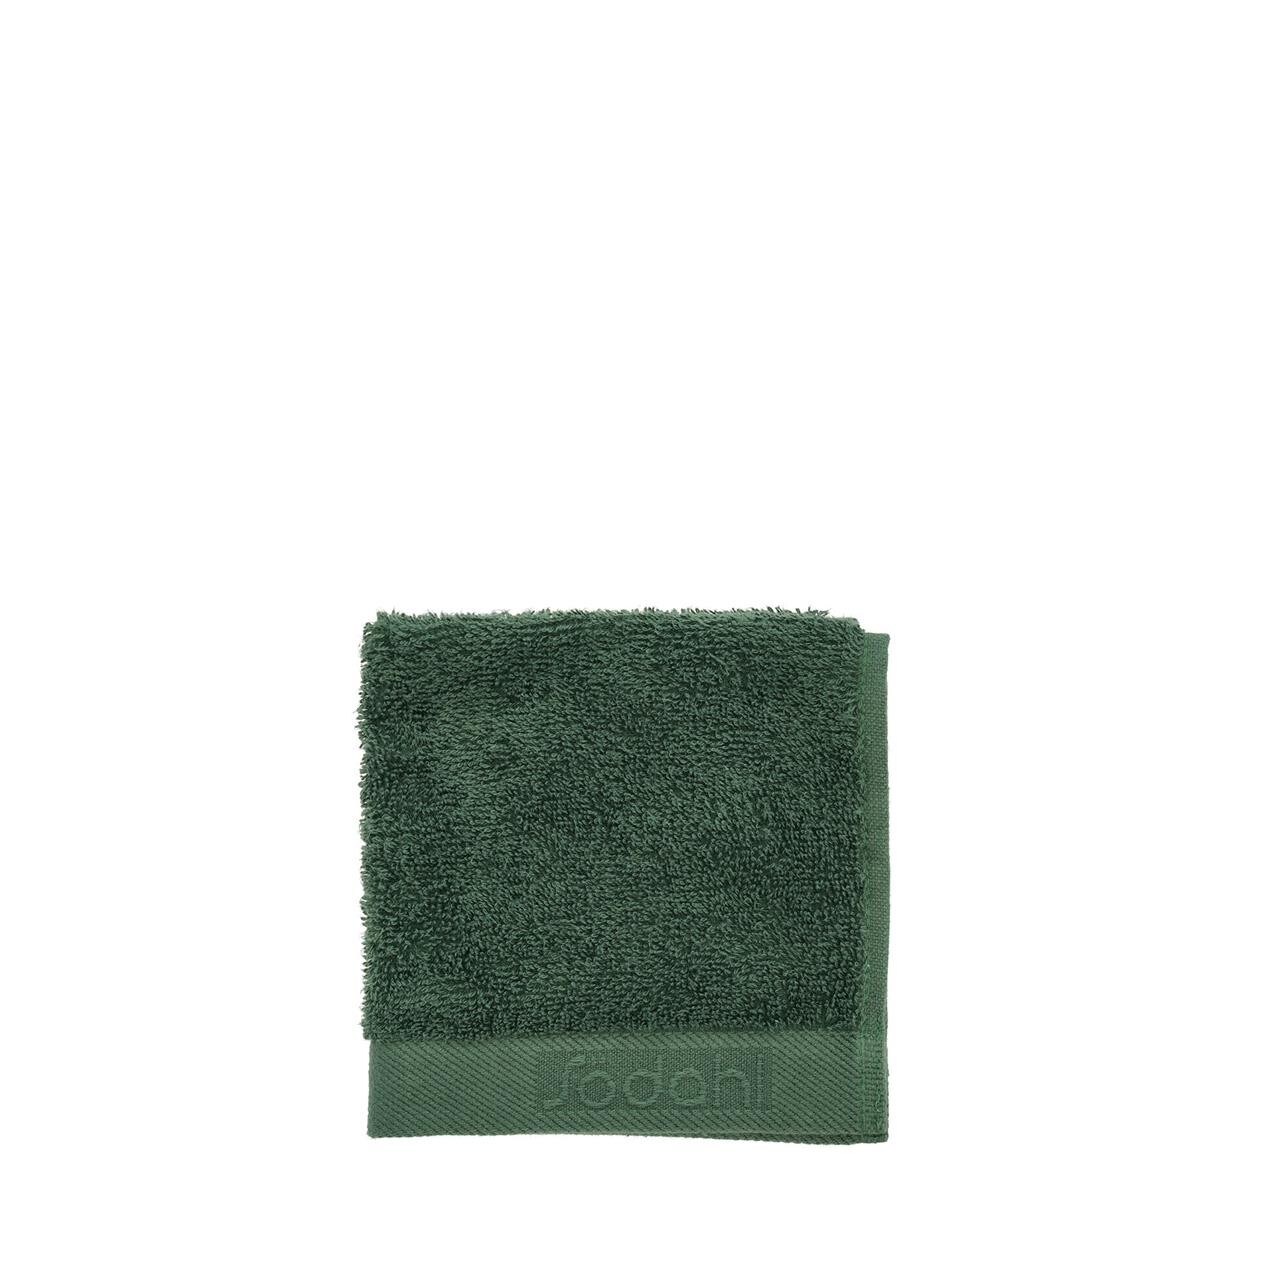 SÖDAHL Comfort øko vaskeklud 30×30 cm pine green